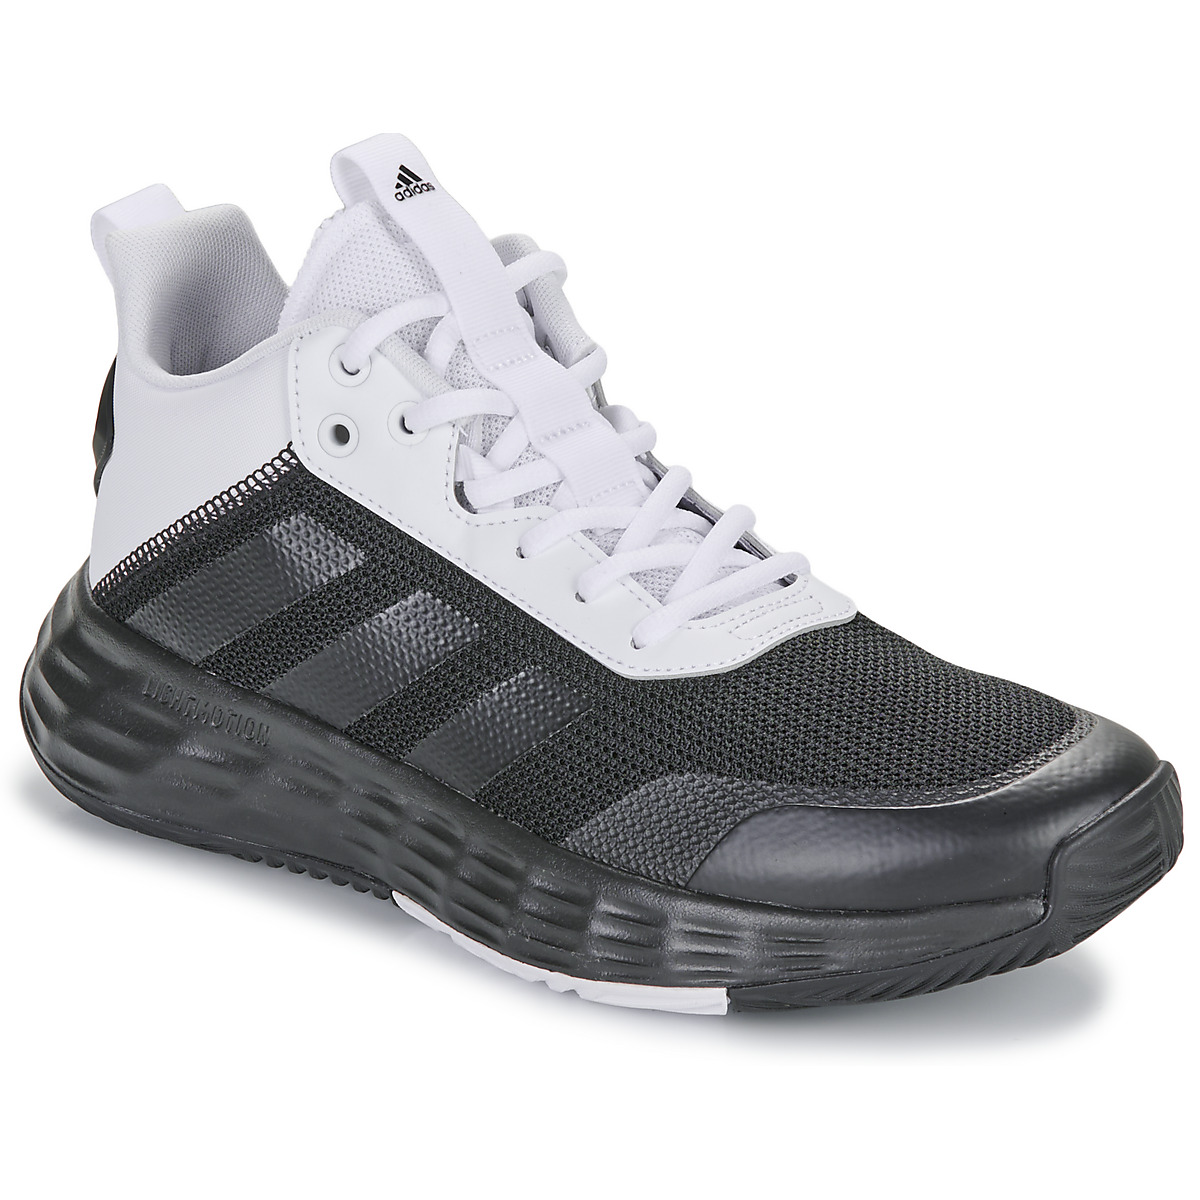 adidas Own-the-Game 2.0 - Heren Basketbalschoenen Sport Schoenen Sneakers Zwart GY9696 - Maat EU 43 1/3 UK 9